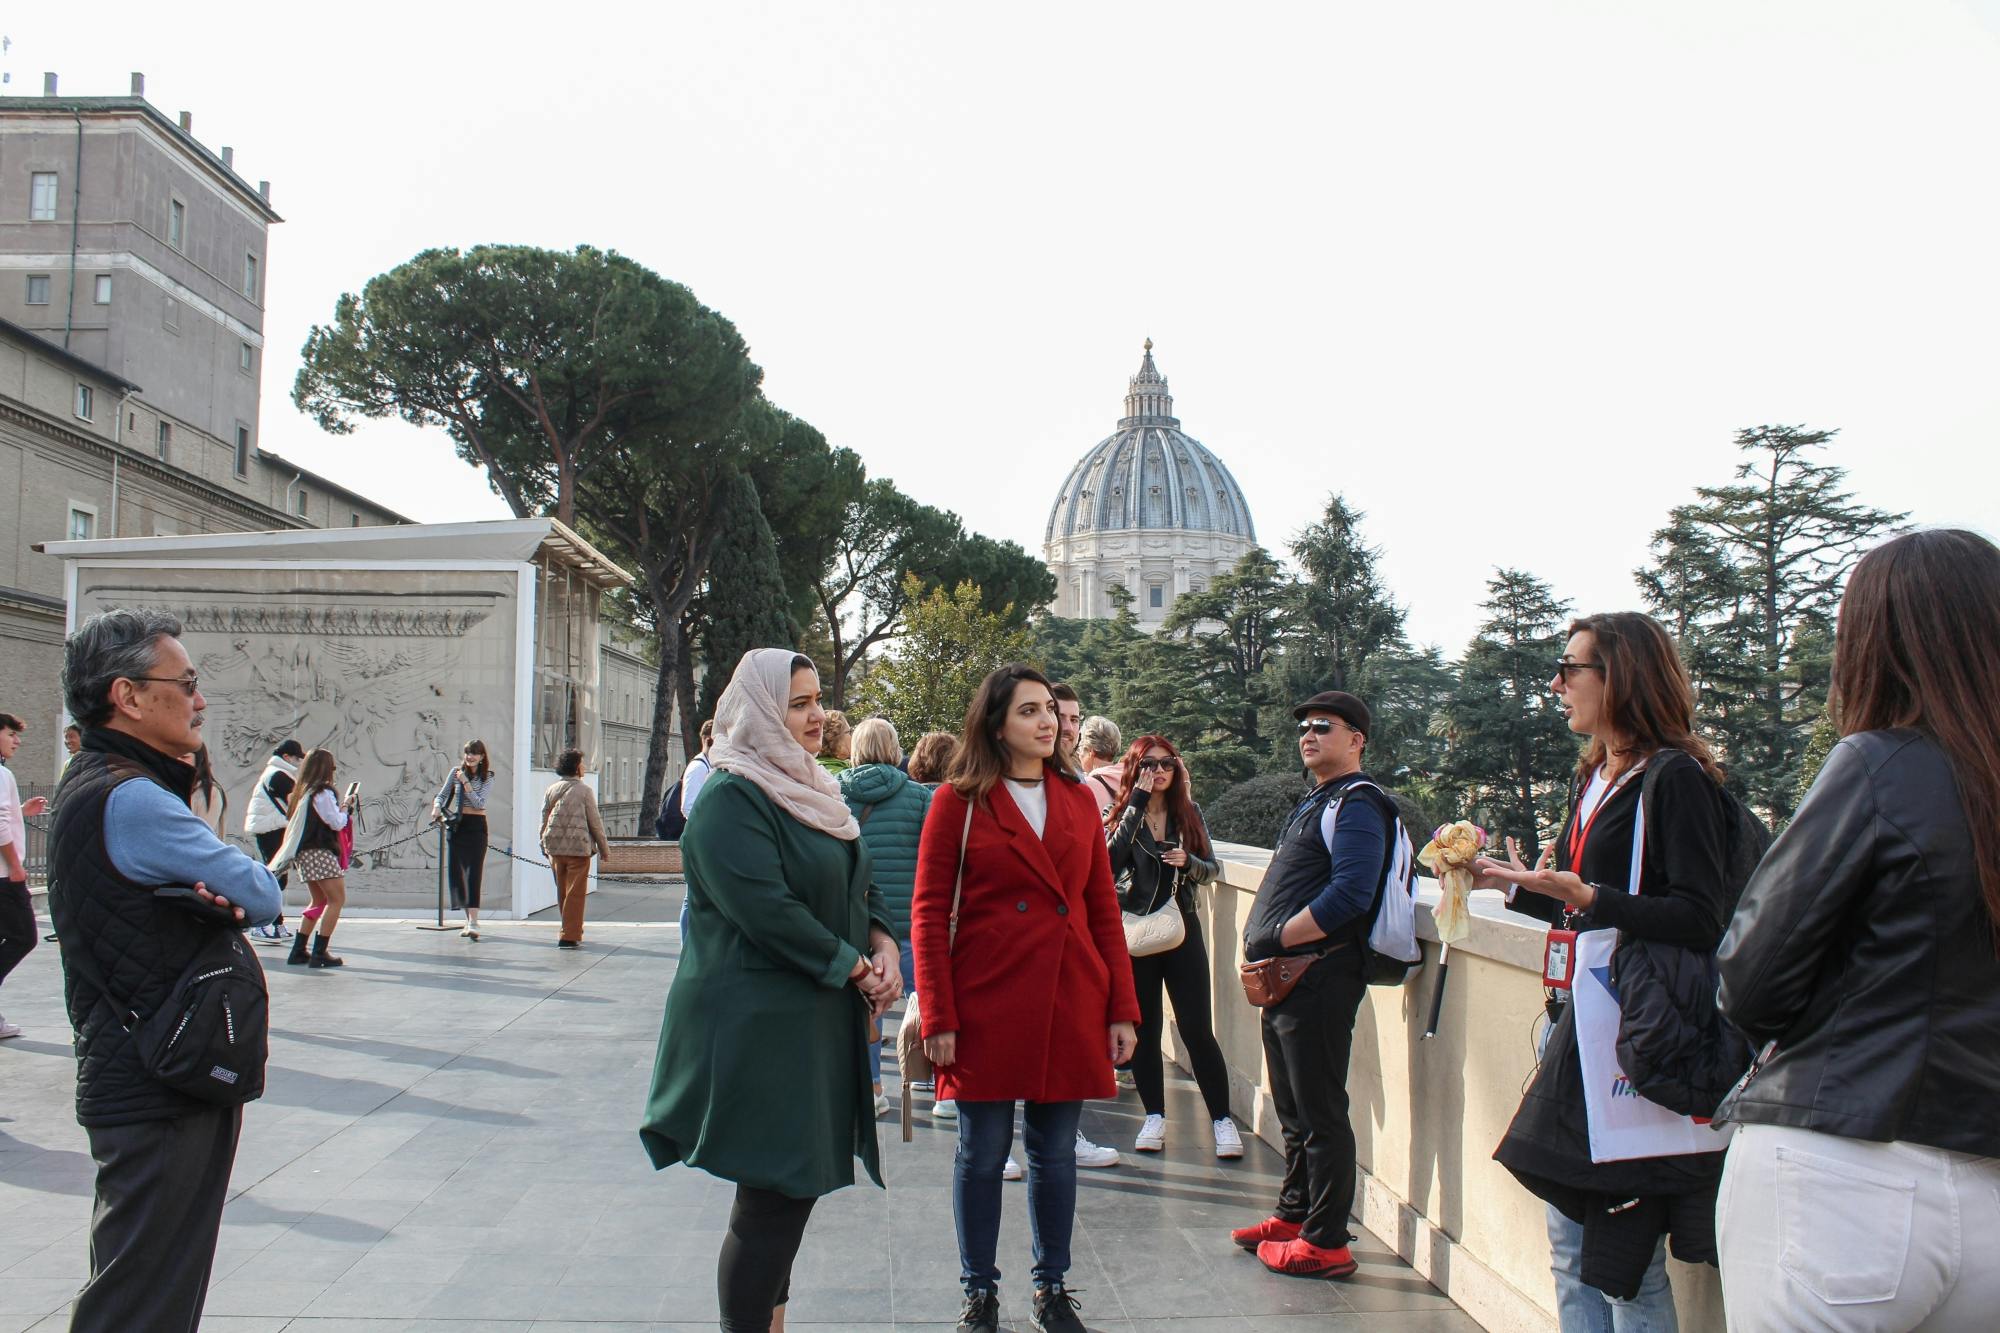 O Museu do Vaticano e a Capela Sistina pulam a fila para grupos pequenos